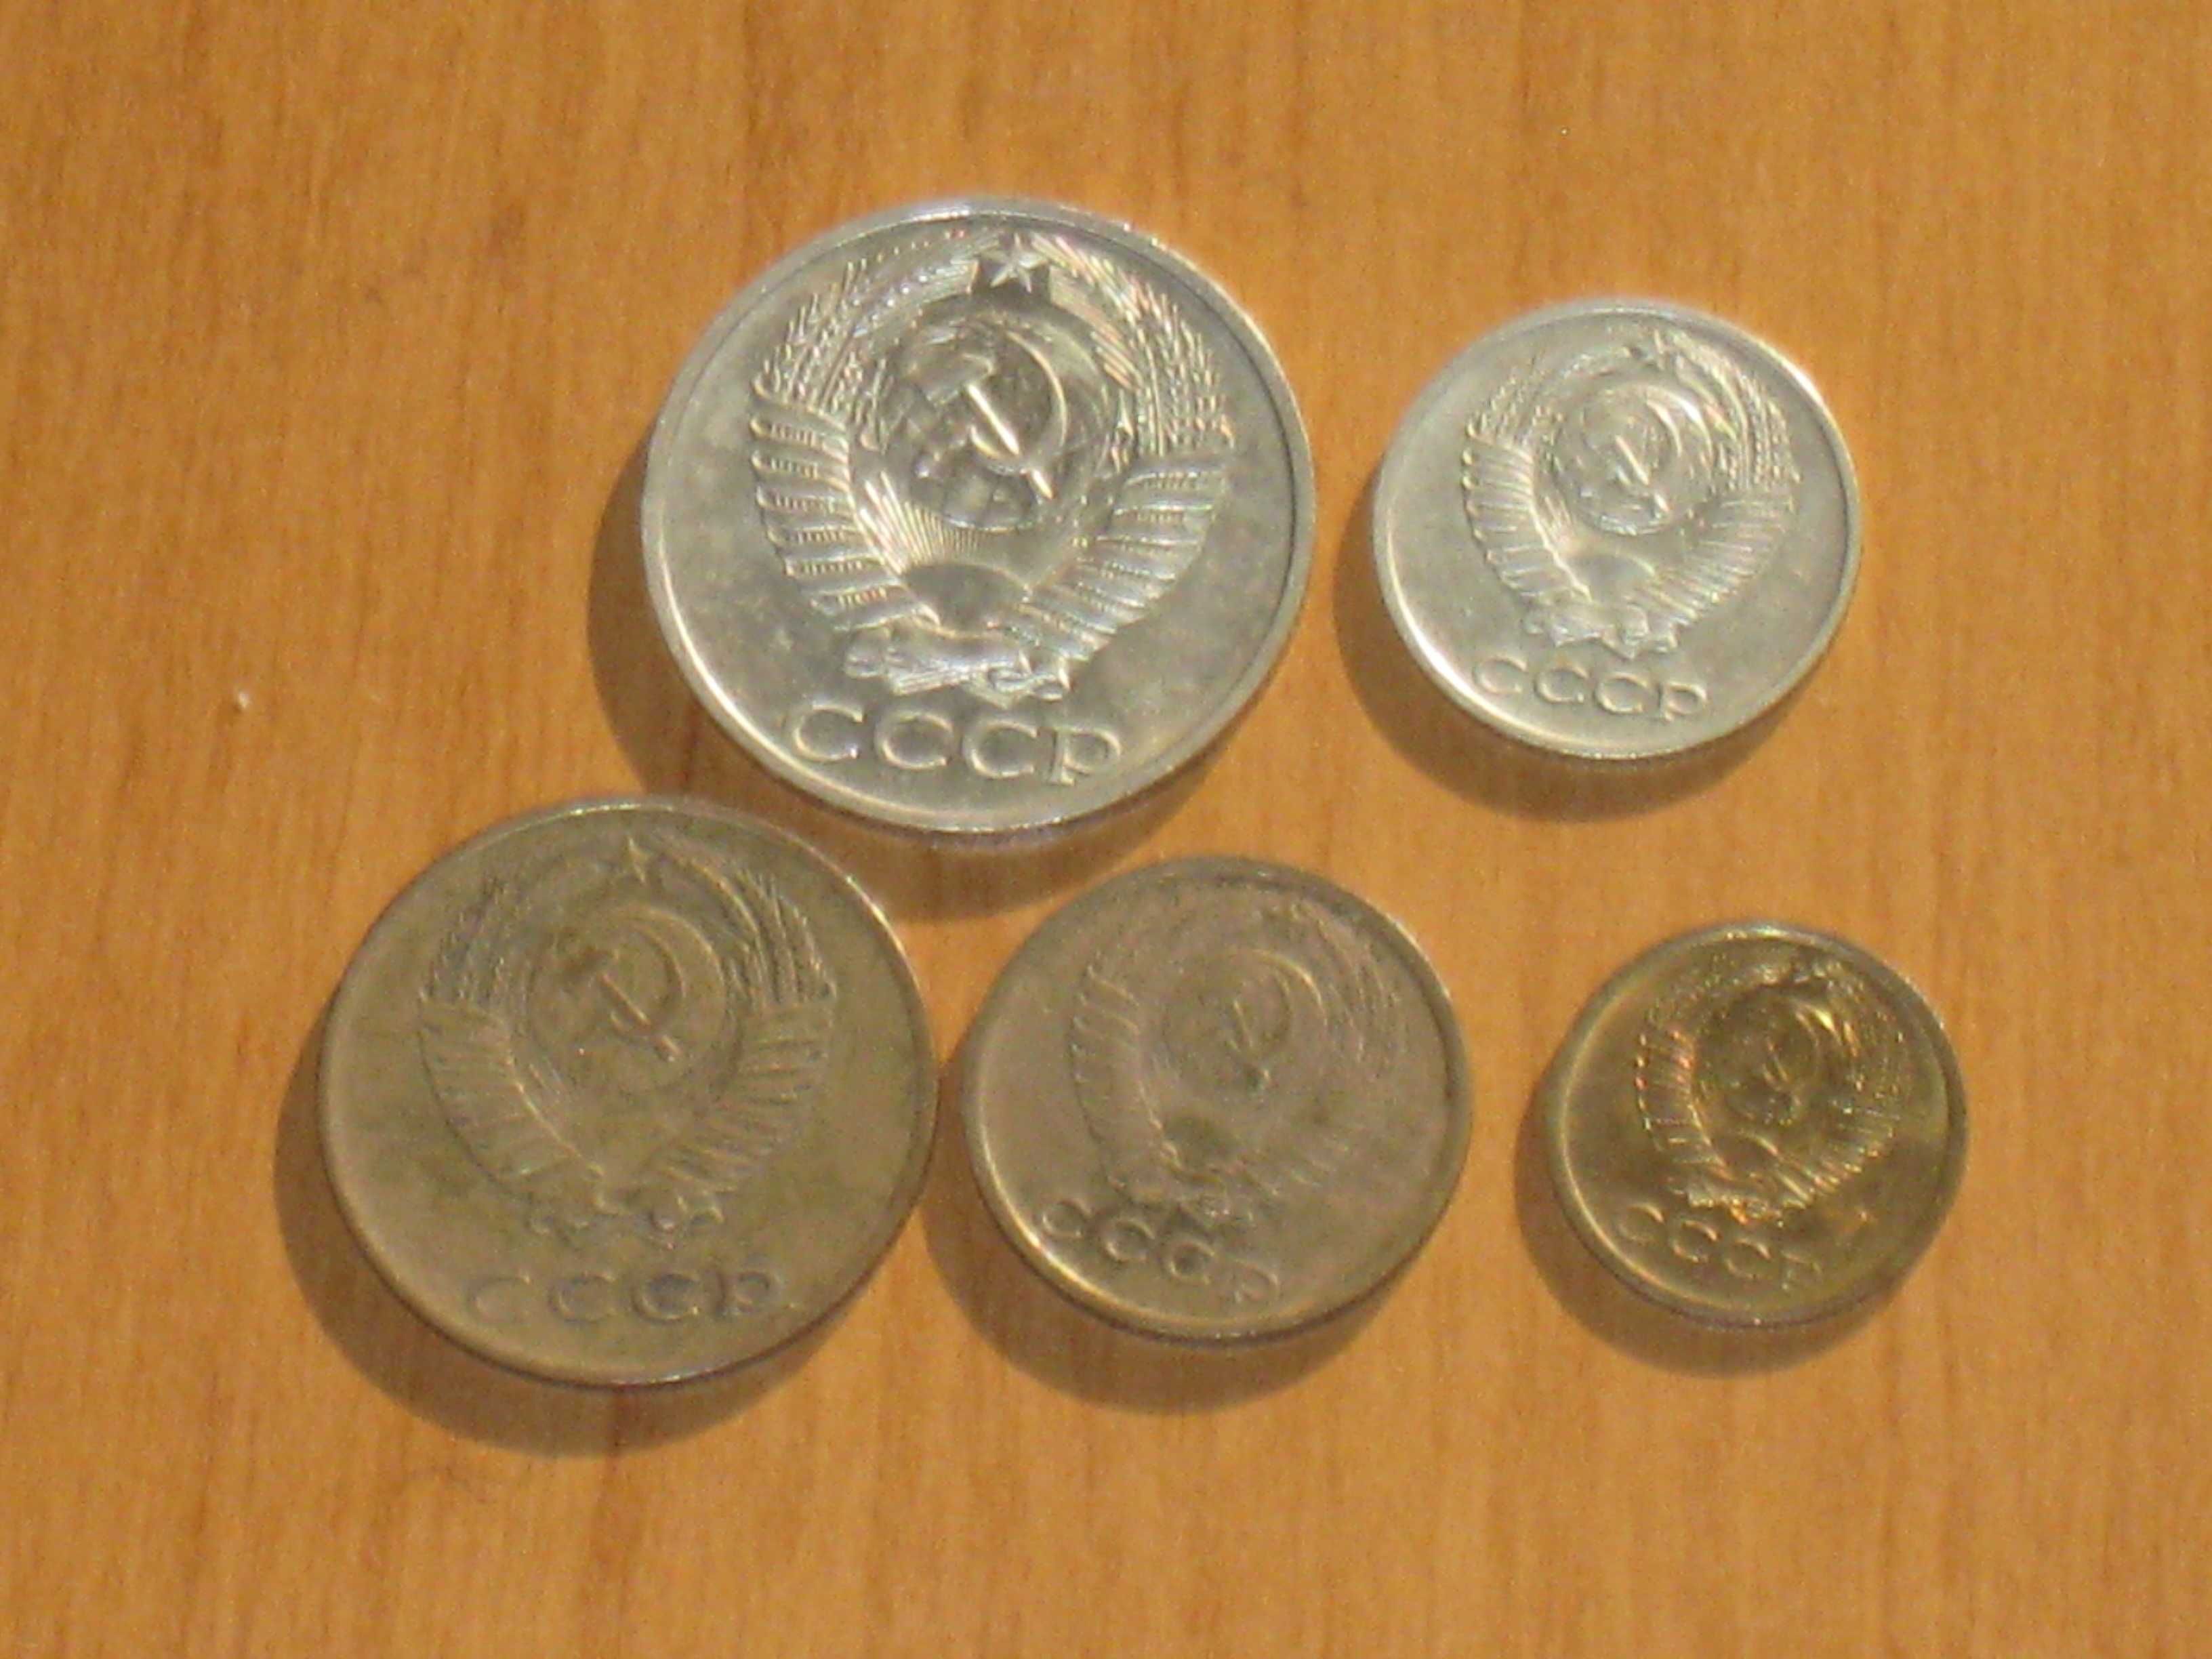 Монеты СССР (1972) - 5 шт.